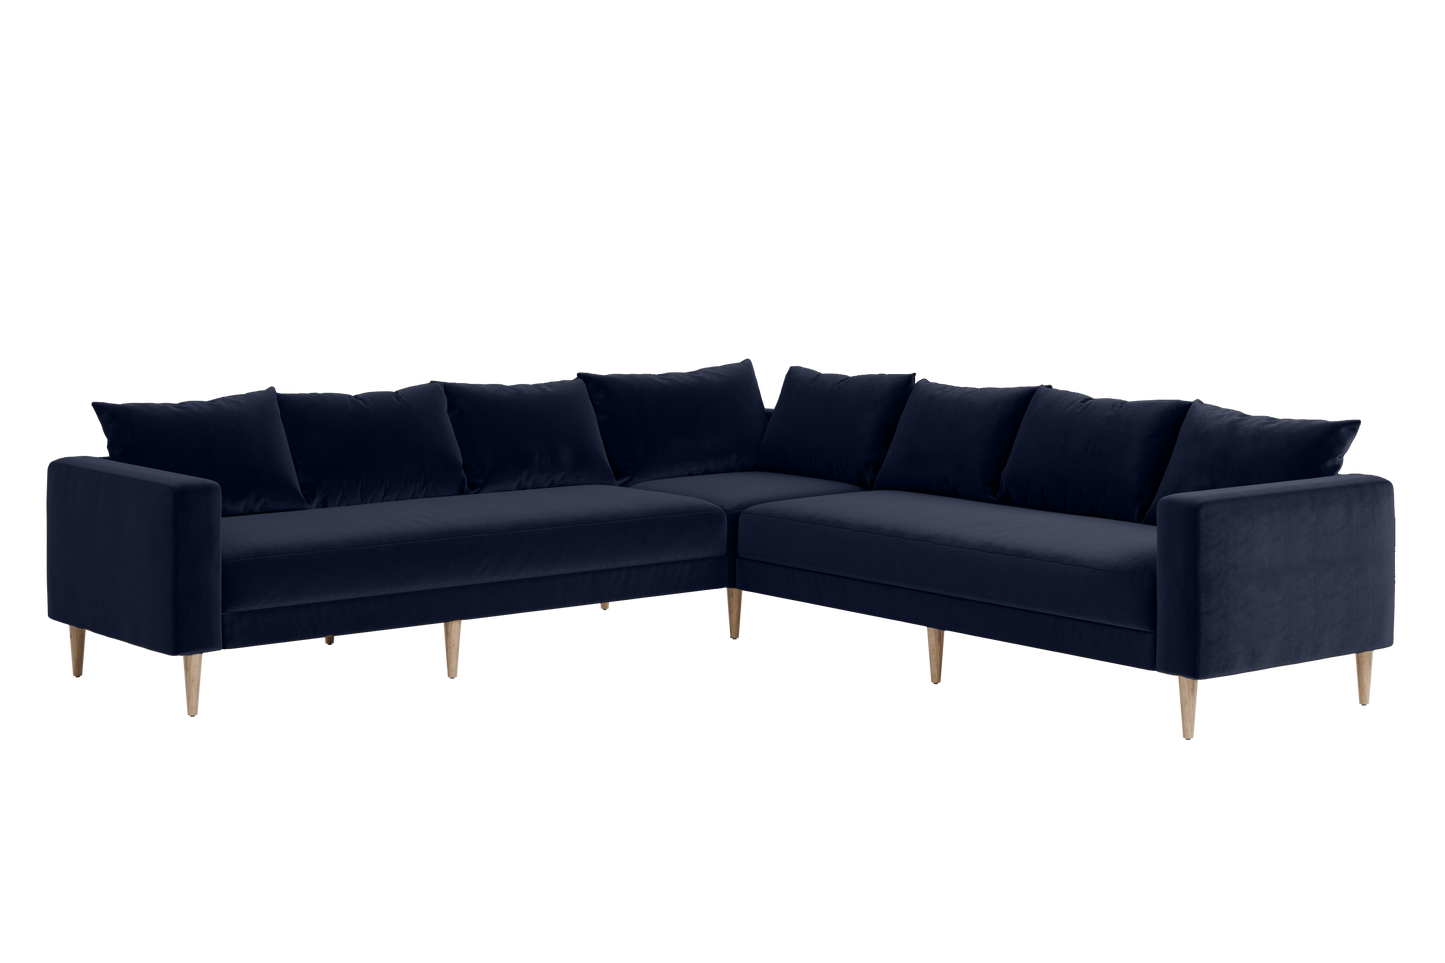 The Essential Corner (7 Seat) Sofa